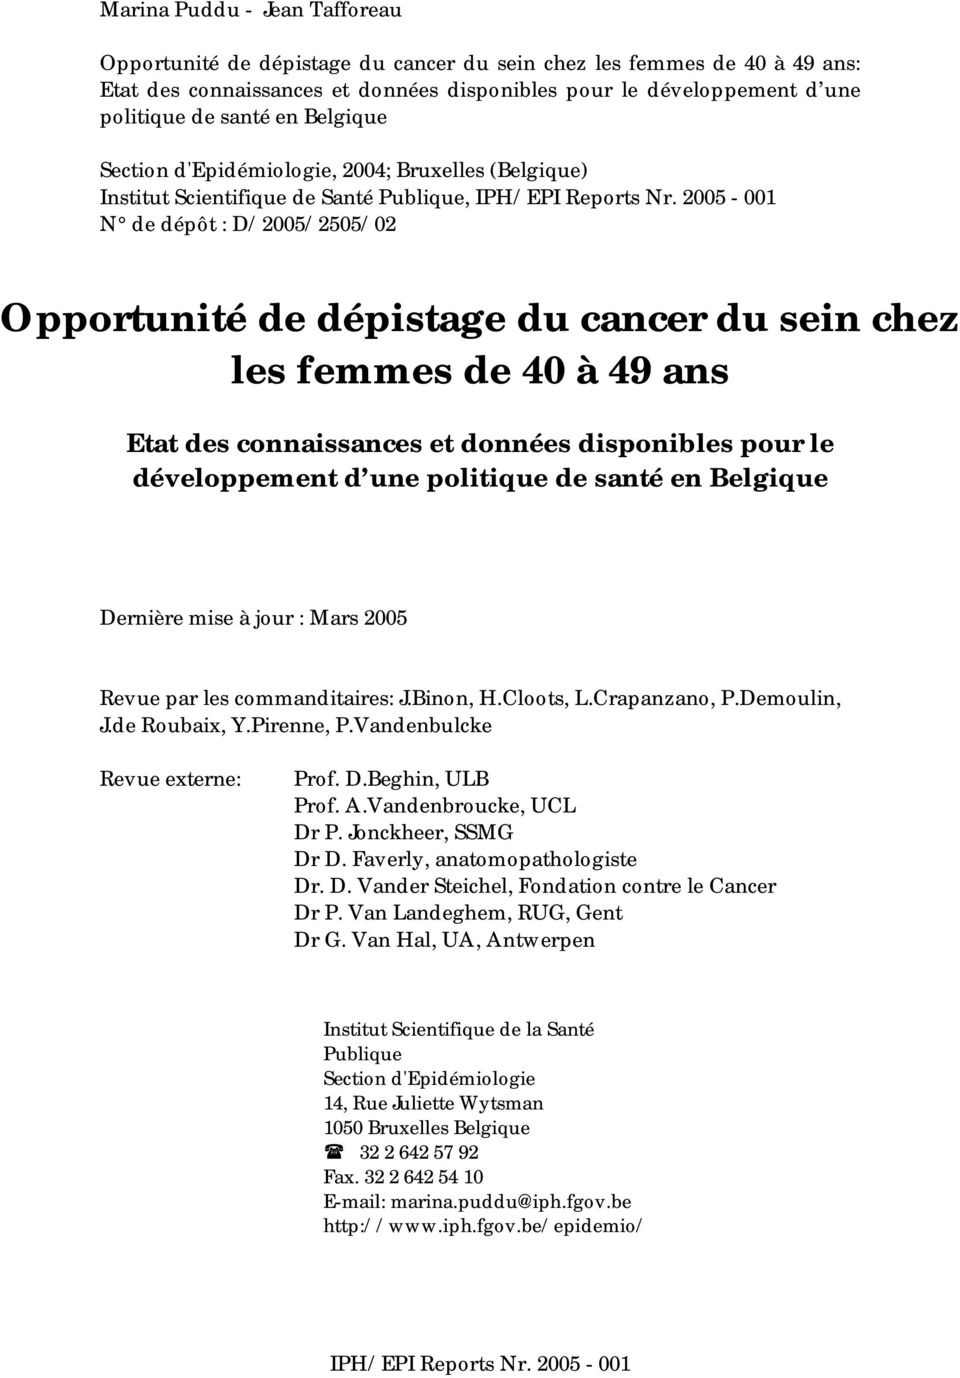 2005-001 N de dépôt : D/2005/2505/02 Opportunité de dépistage du cancer du sein chez les femmes de 40 à 49 ans Etat des connaissances et données disponibles pour le développement d une politique de